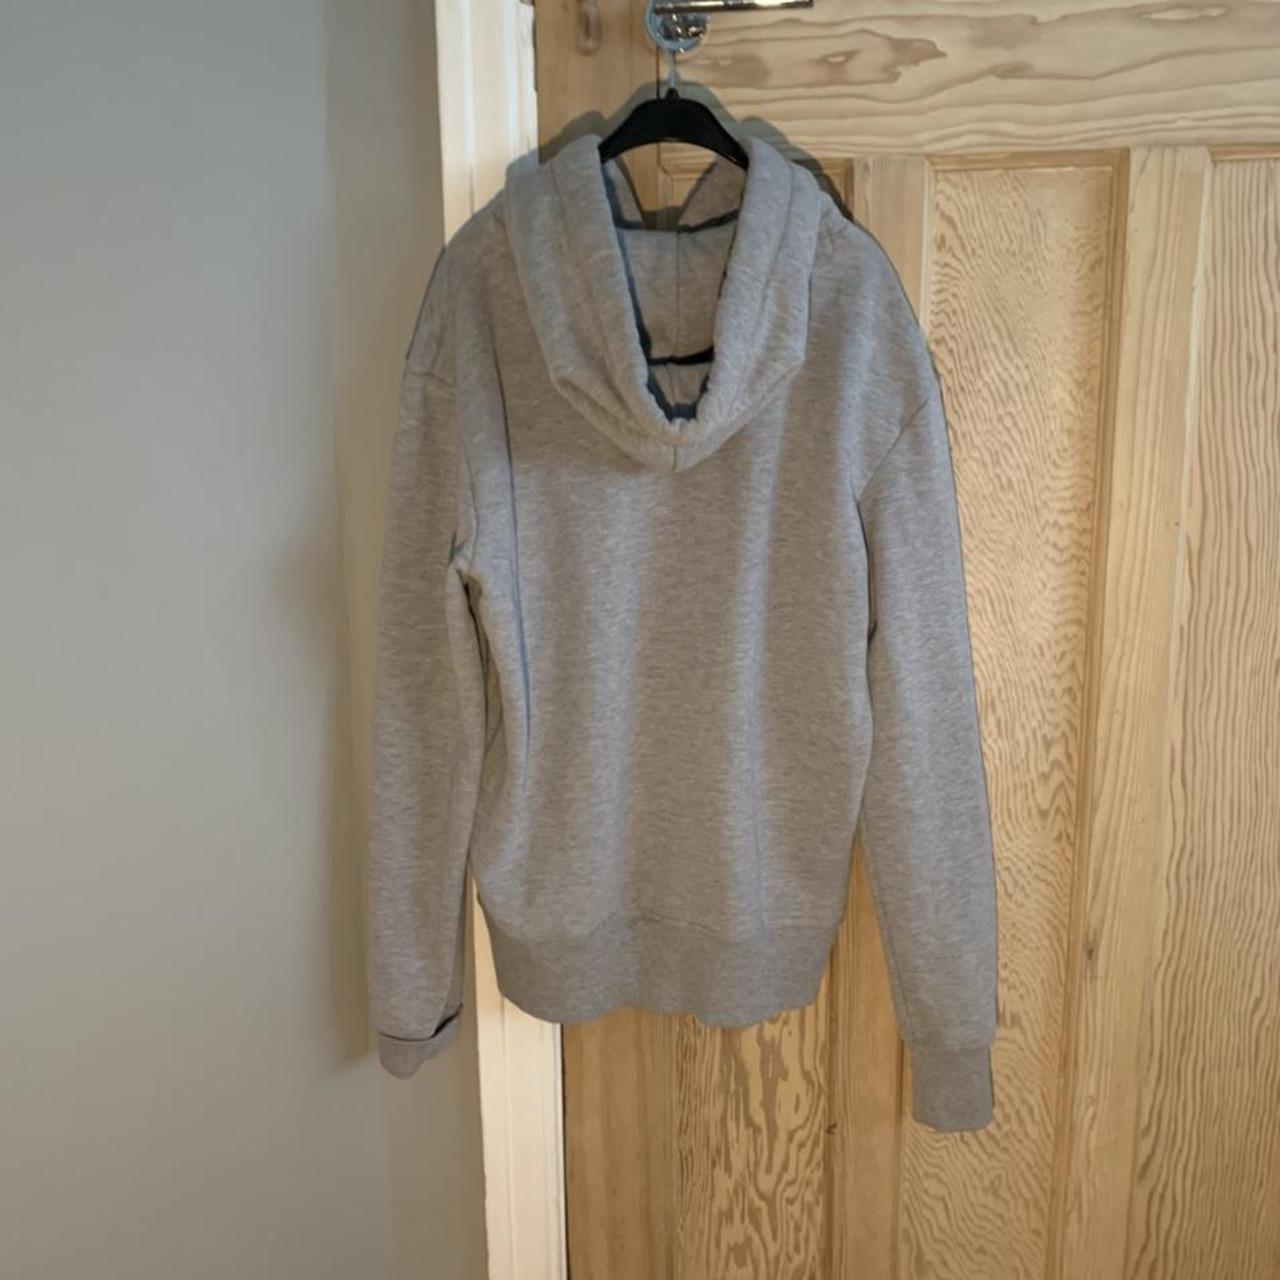 Super dry grey hoodie. Size: M. Supercool grey... - Depop